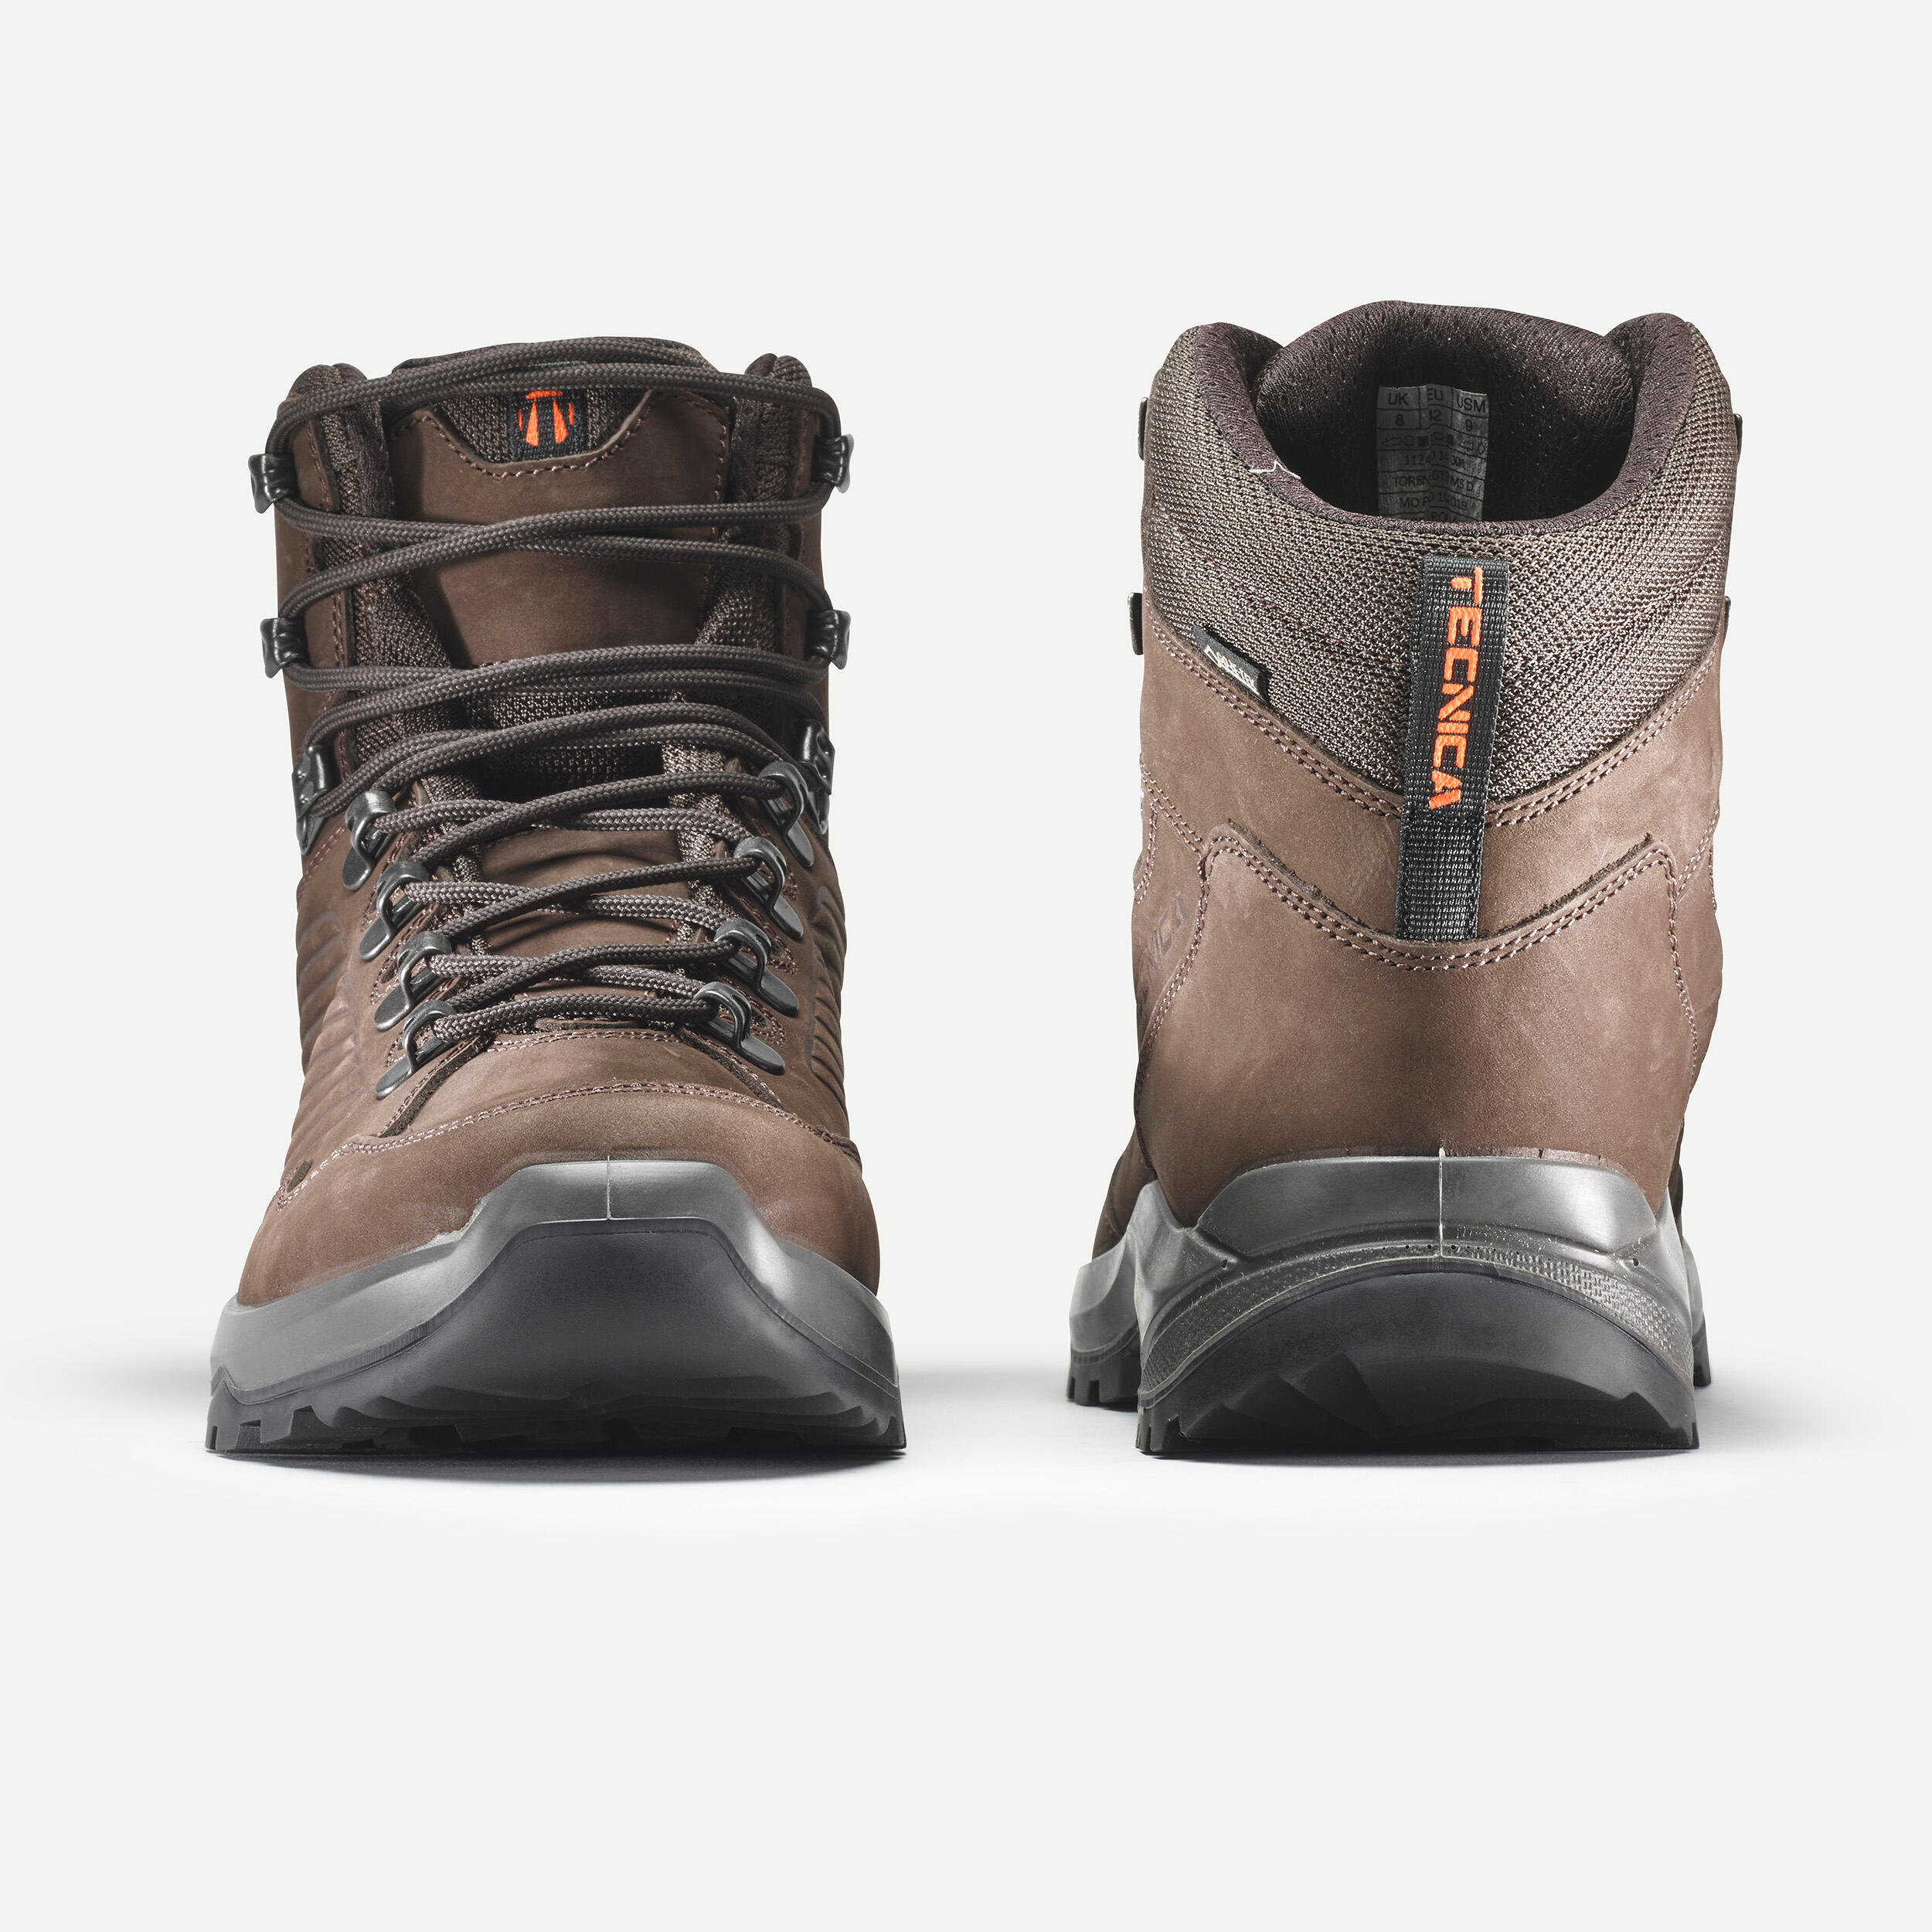 Men's waterproof hiking boots - Technica Torena Gore-Tex 2/6